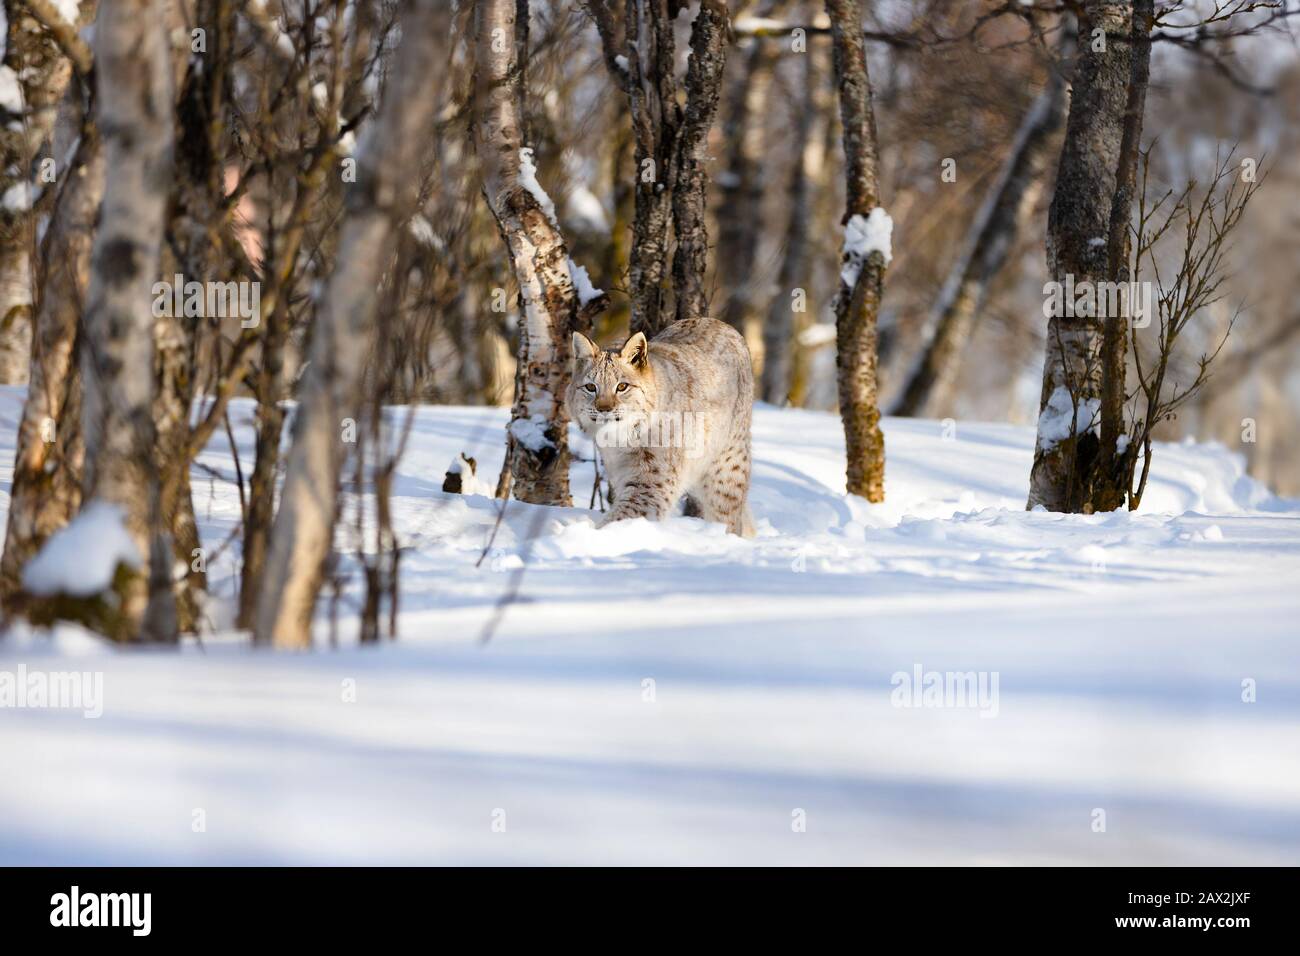 Alerter le lynx se promenant sur la neige au milieu d'arbres nus Banque D'Images